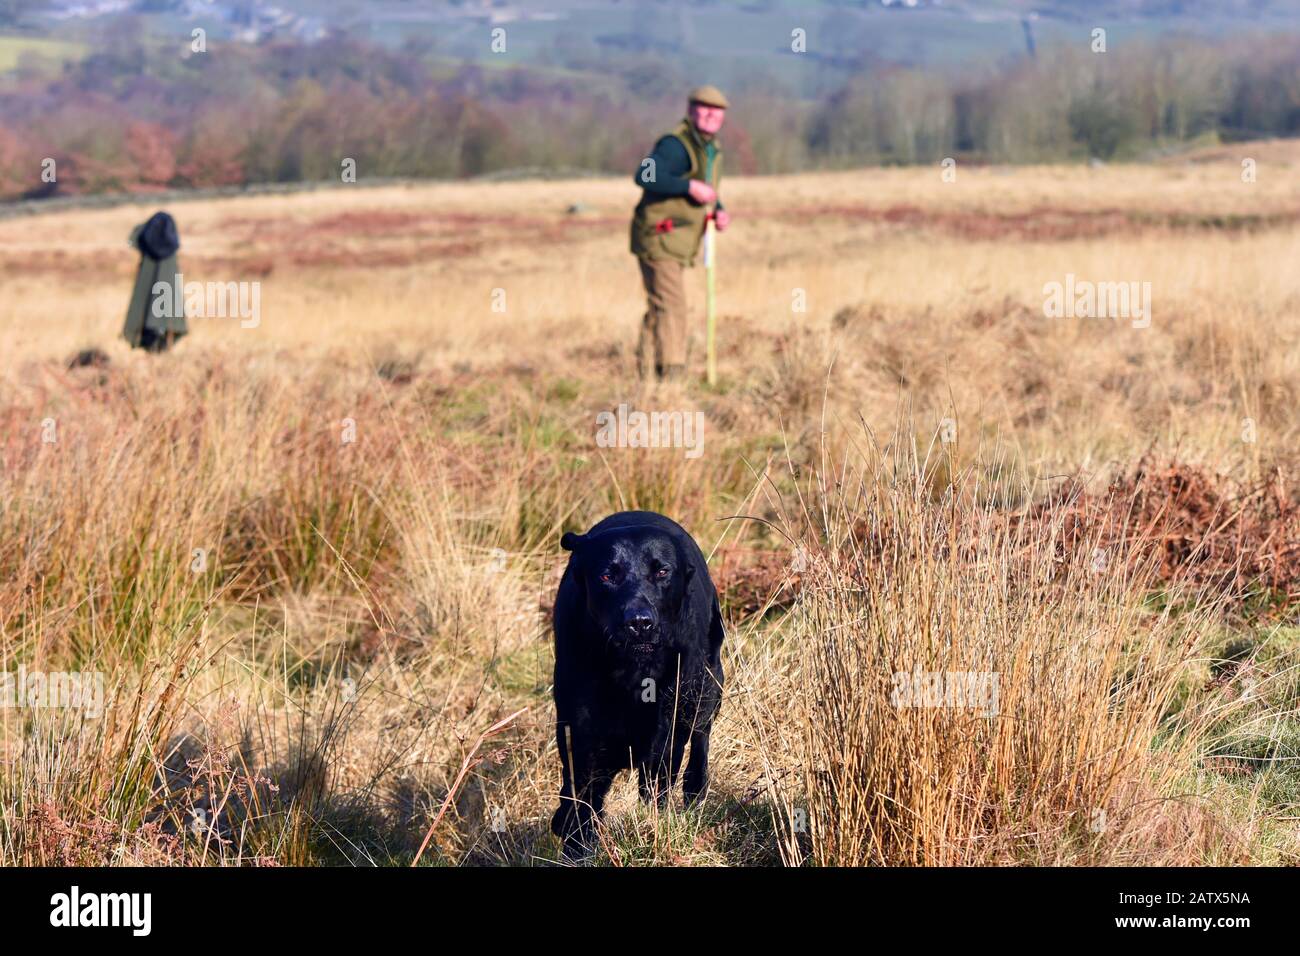 Session de formation des chiens d'arme Barden Moor Yorkshire Dales Royaume-Uni un gardien de but forme son chien à fetch un oiseau factice. Banque D'Images